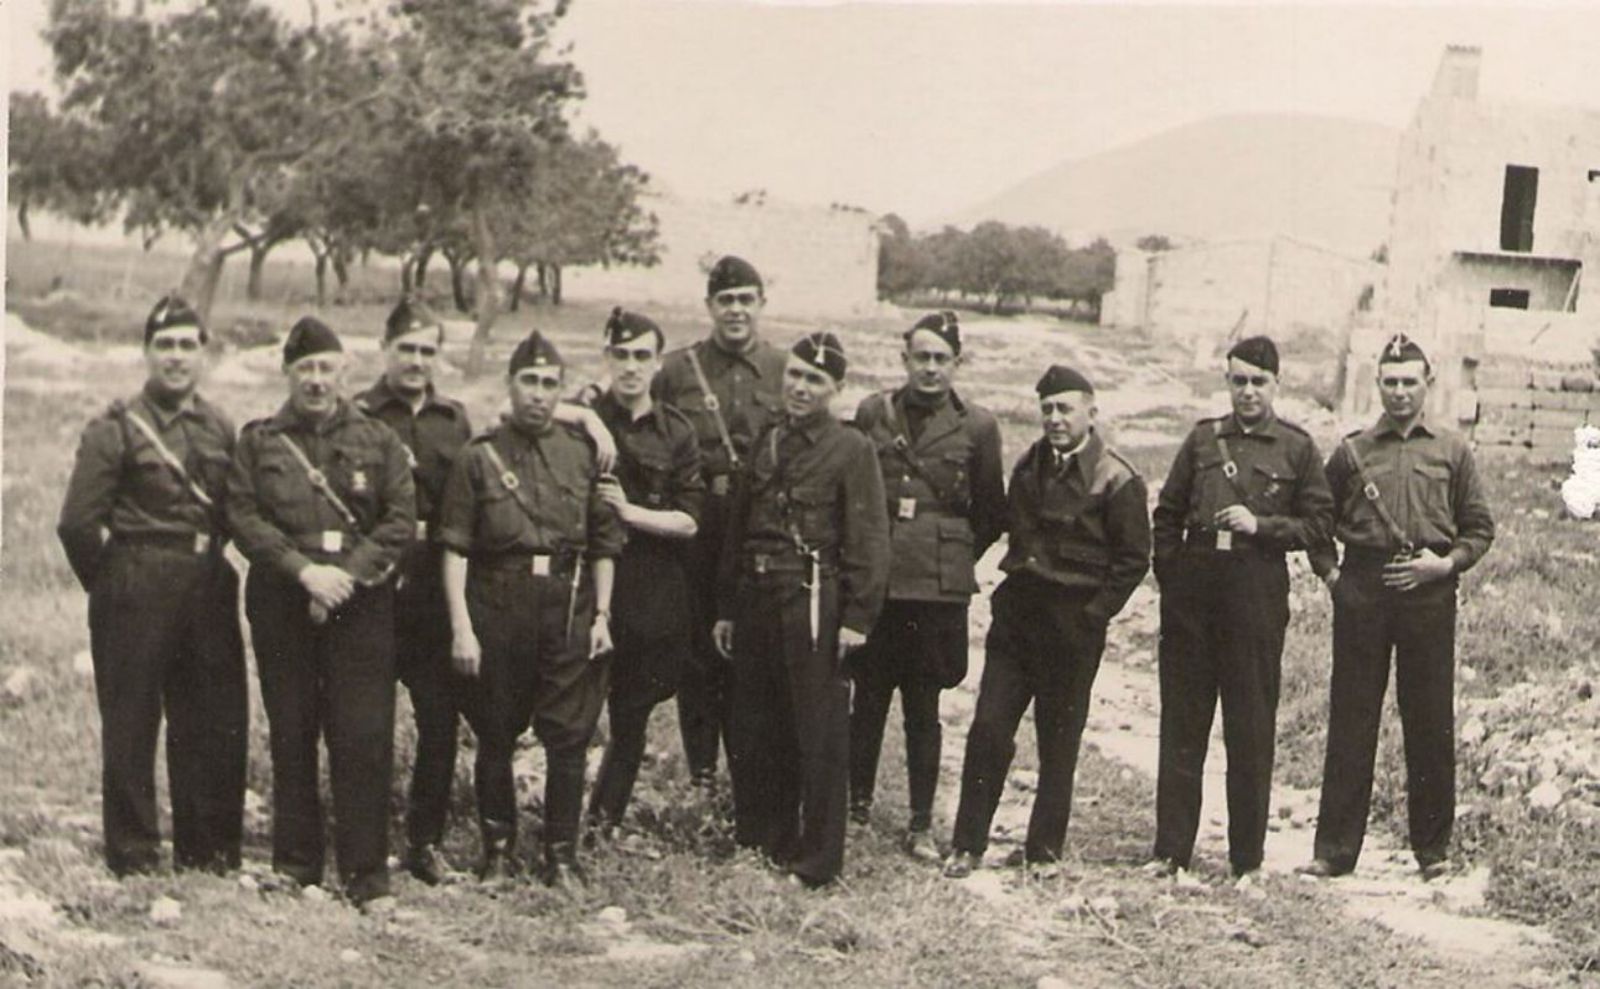 Lluís Sitjar, en el centro de la imagen, con otros miembros de la Falange de Porreres.